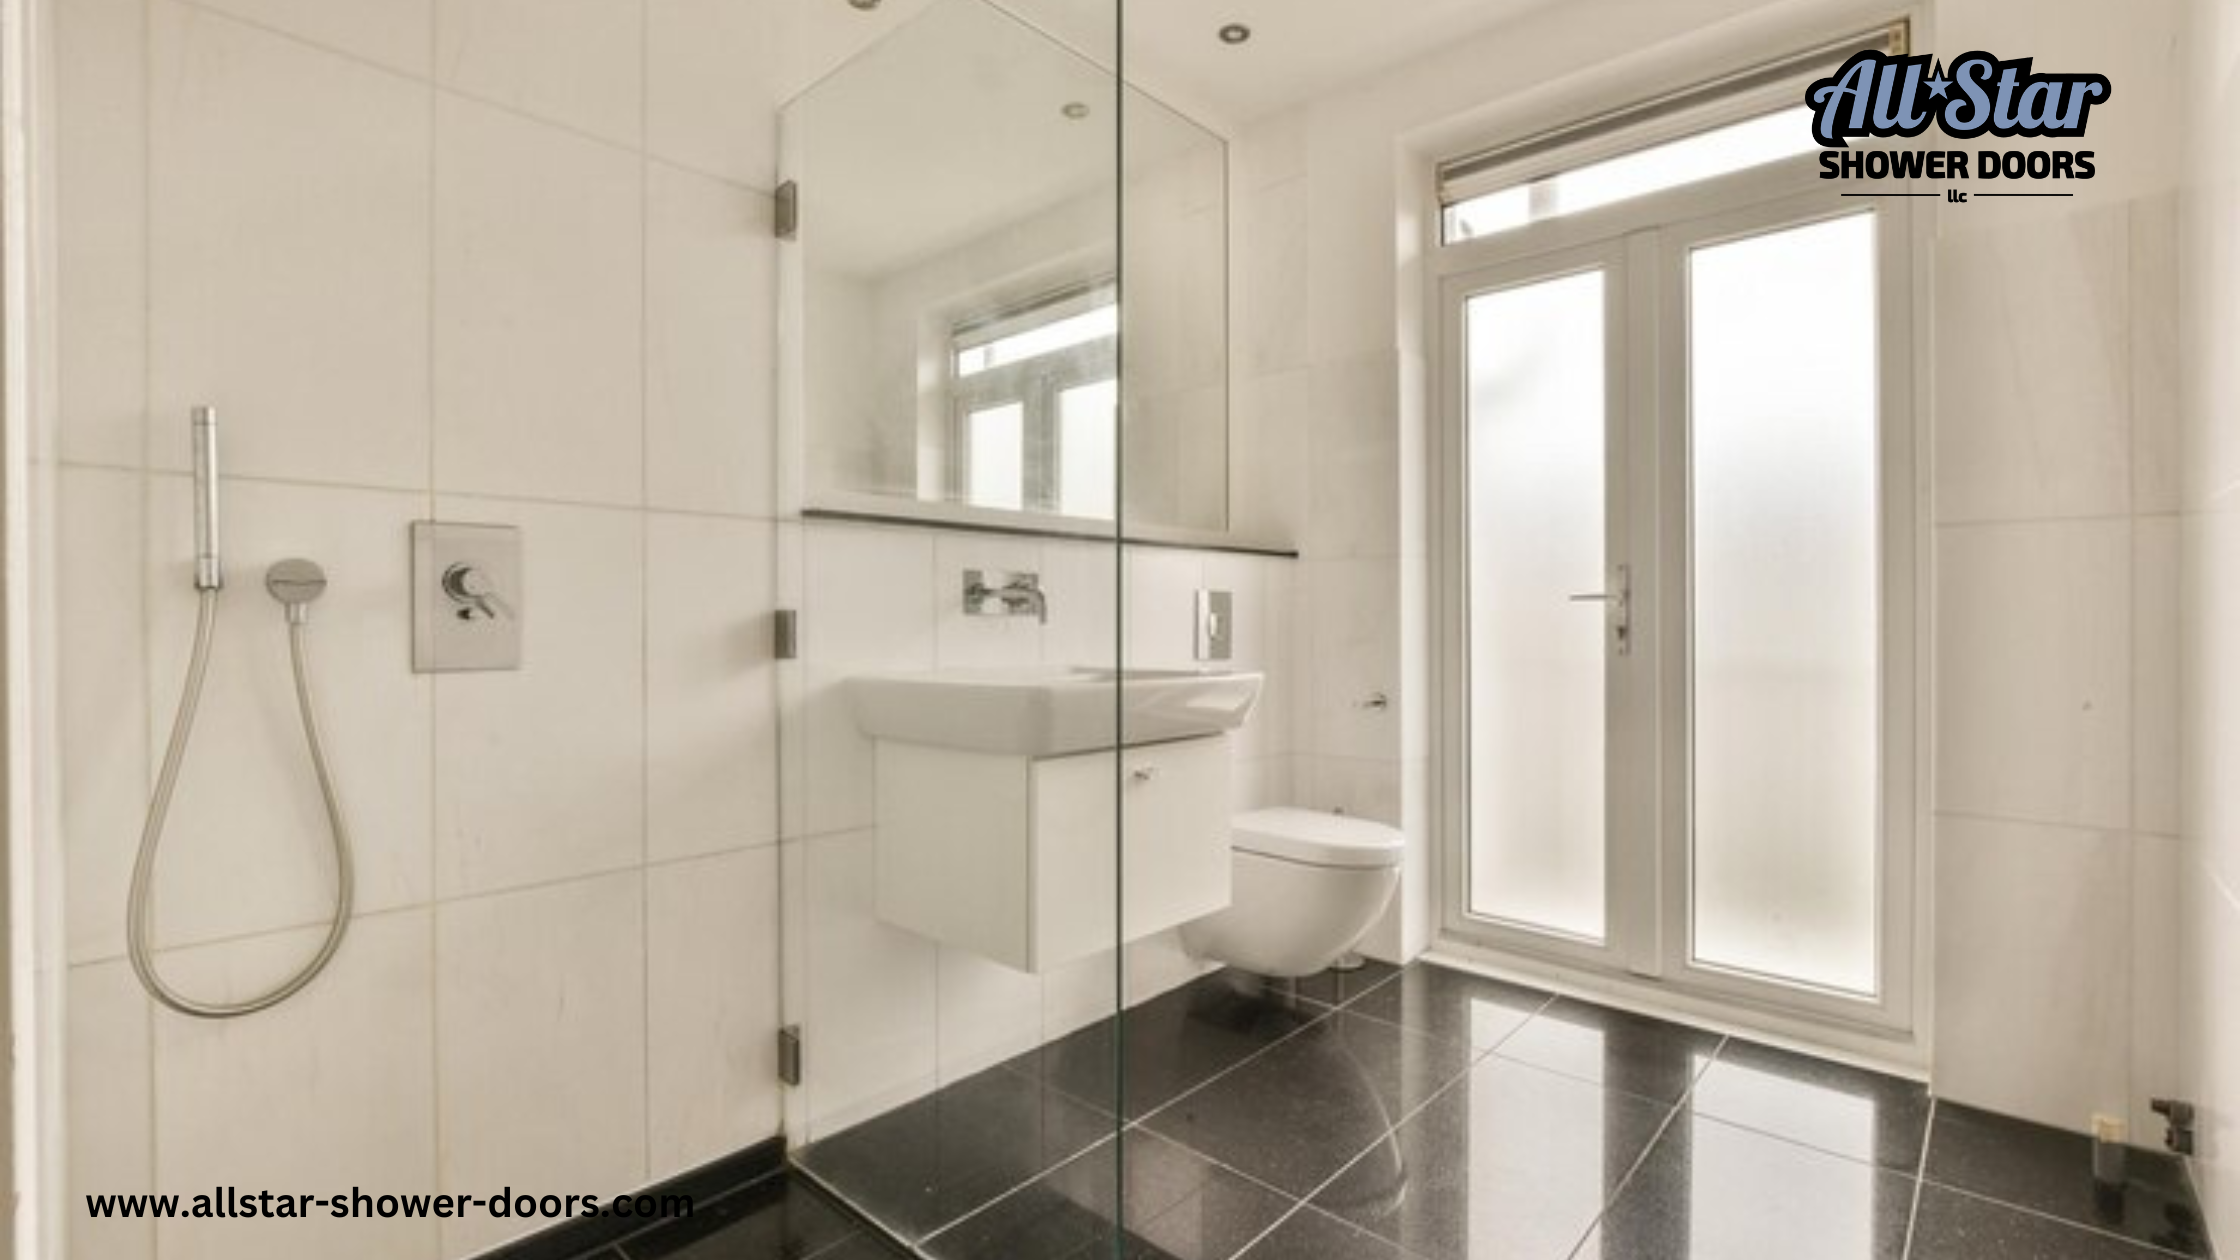 6 Best Design Tips for Frameless Shower Doors